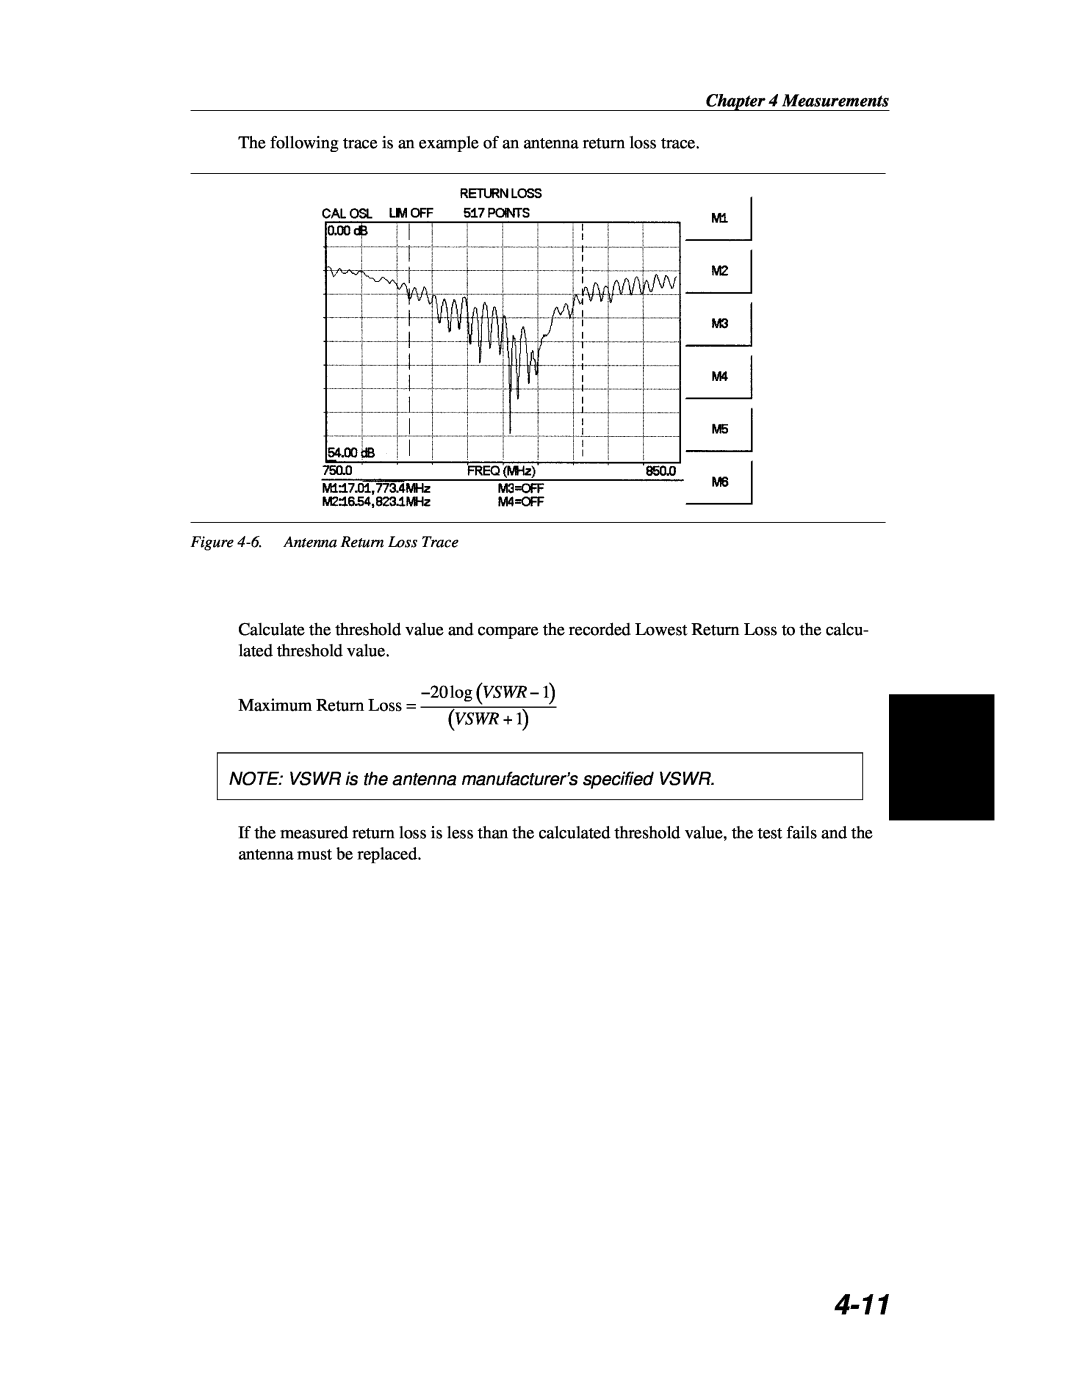 Anritsu S251C manual 4-11, Vswr, Measurements, log VSWR Maximum Return Loss = 